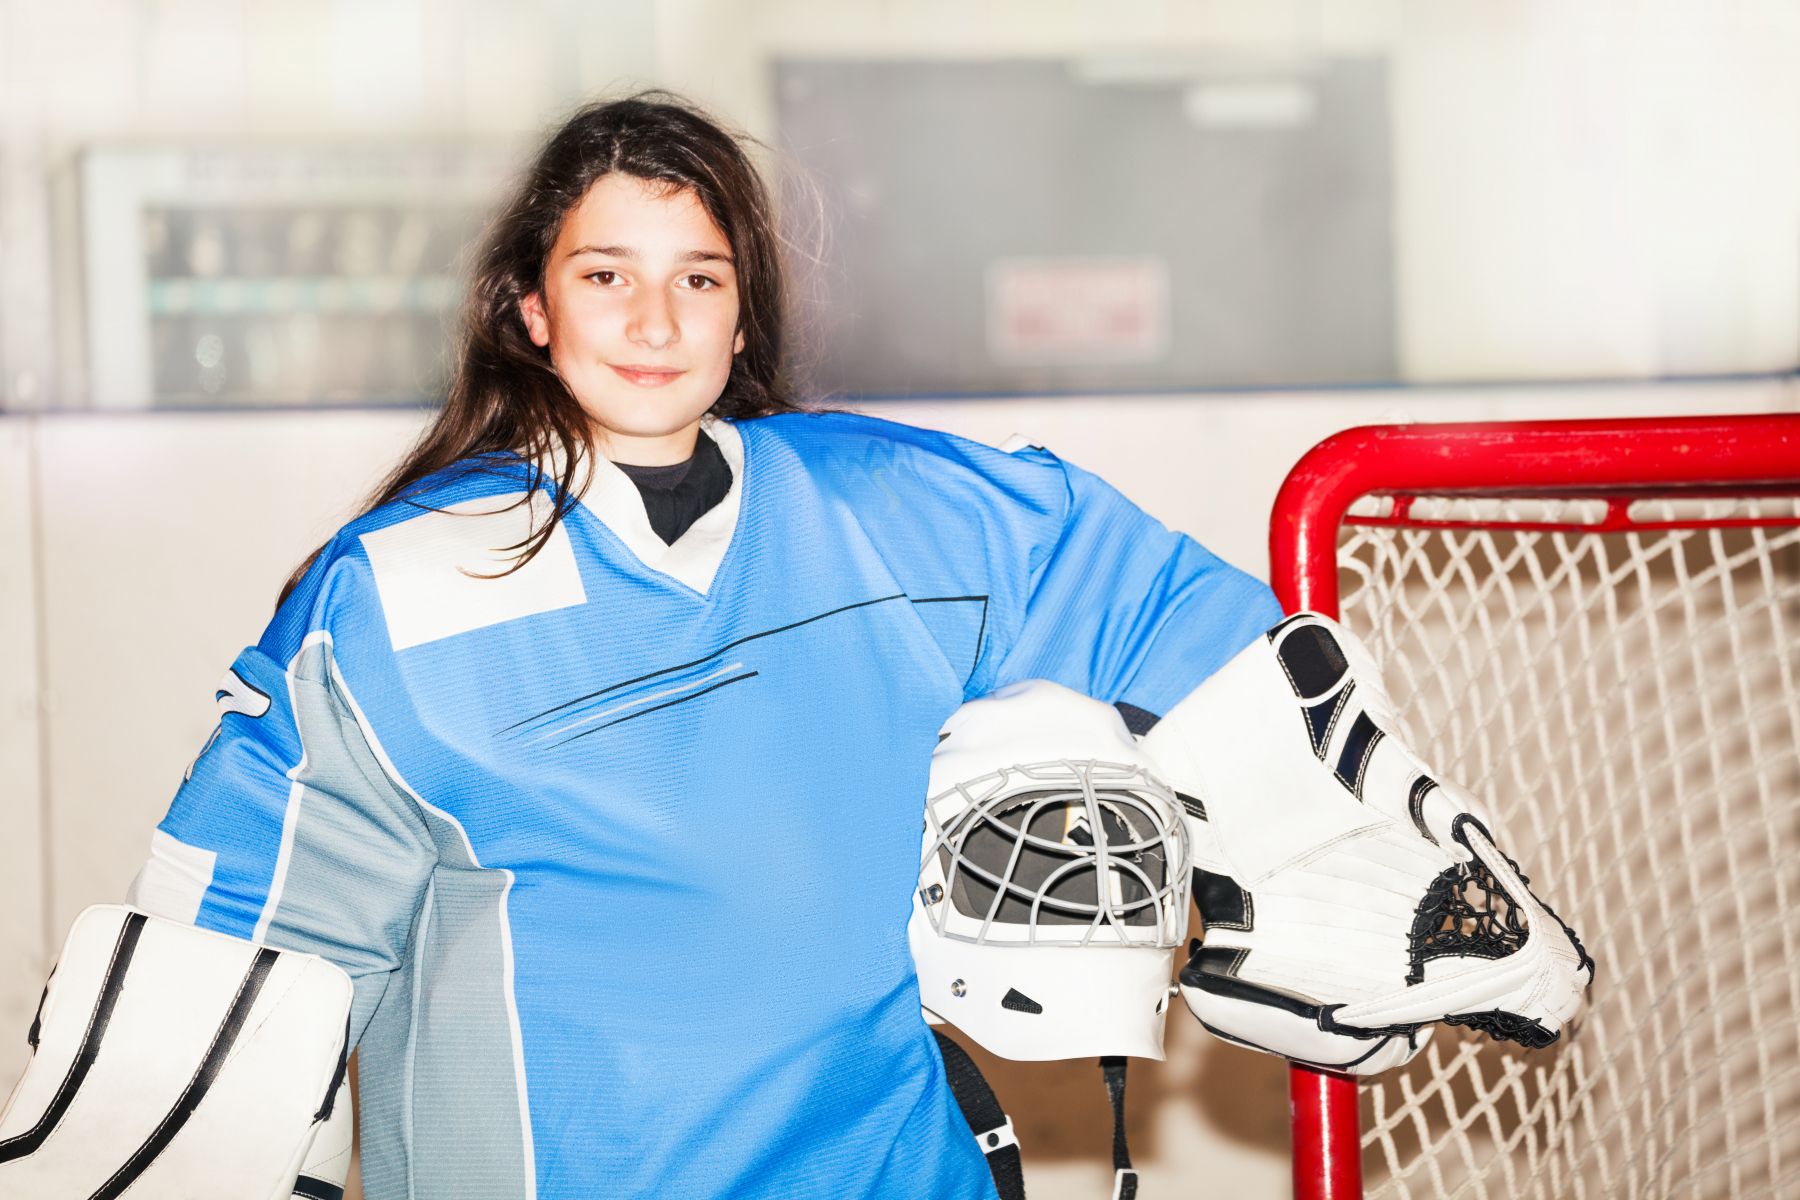 Flicka med hockeyutrustning framför ett ishockeymål